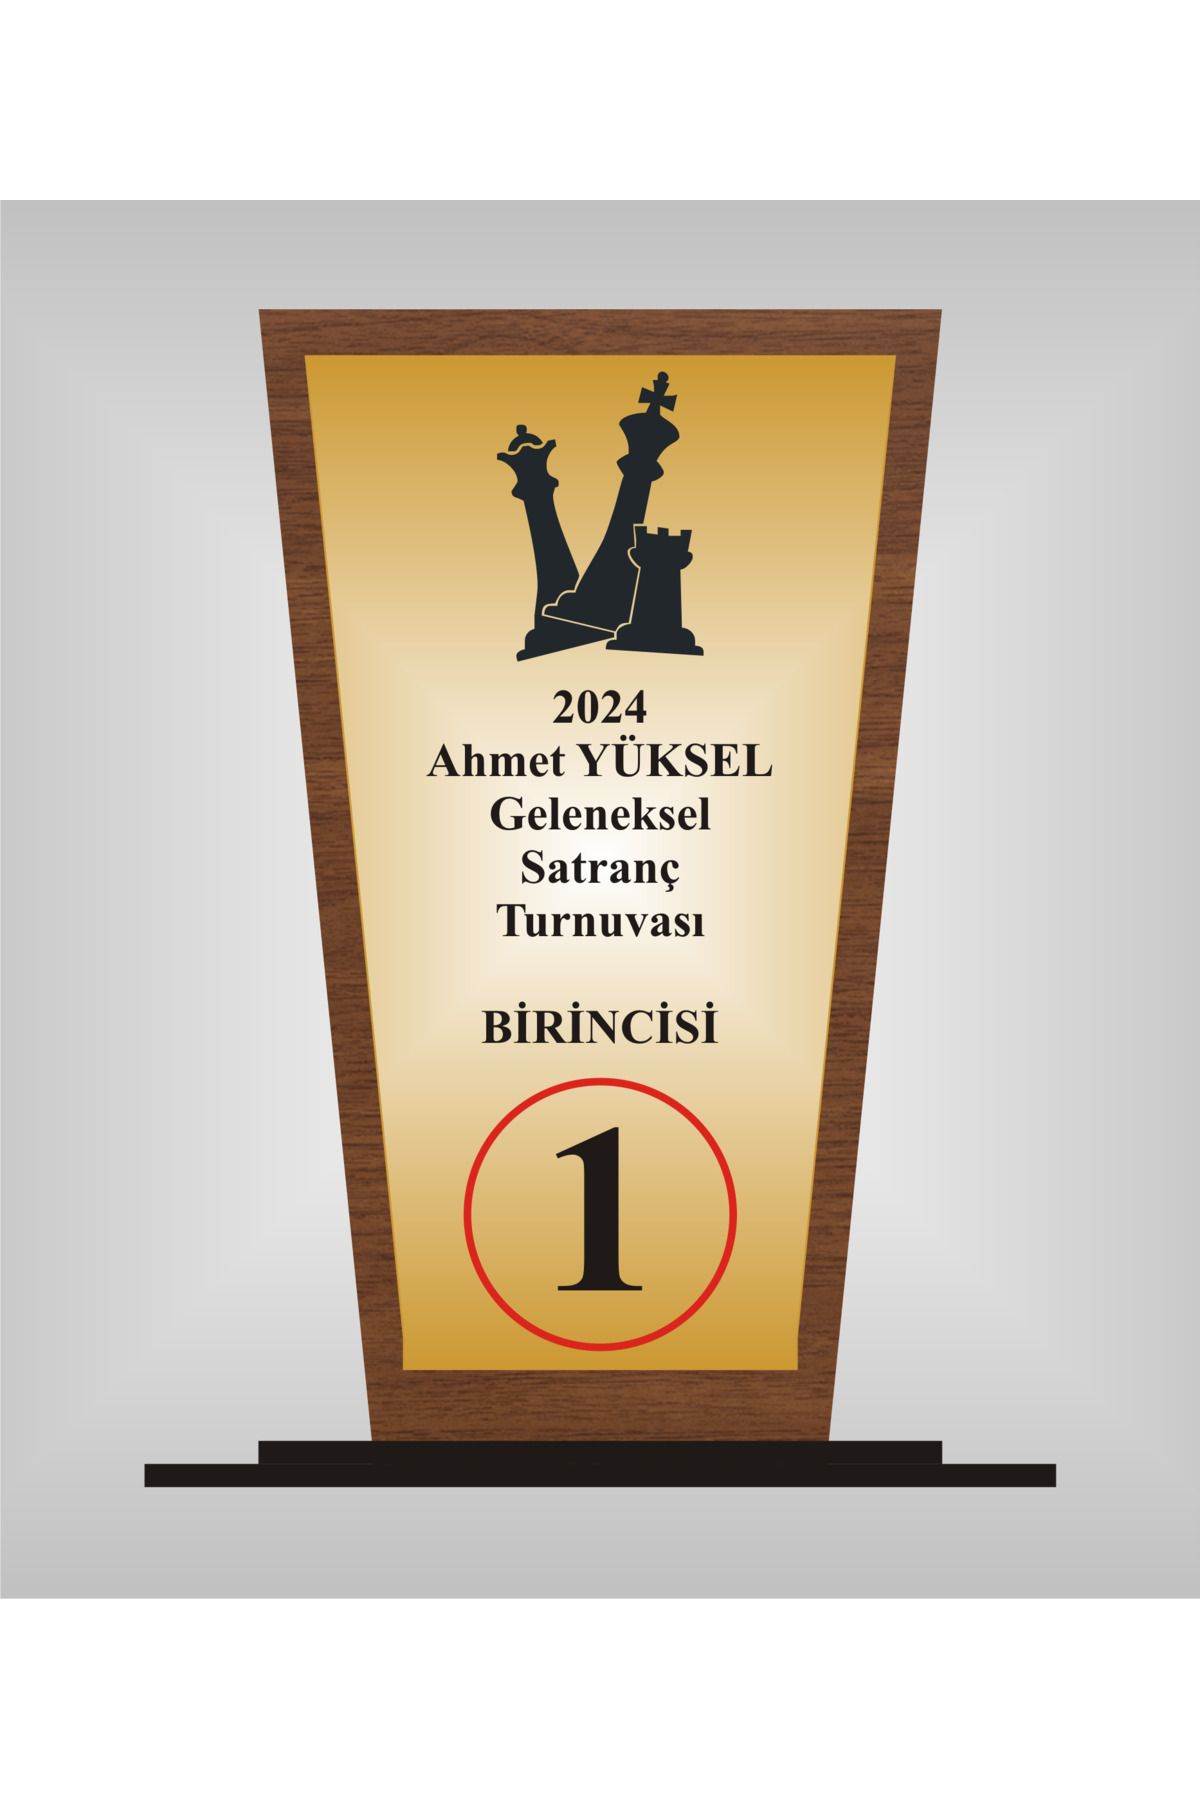 yüksel34 Satranç Turnuvası  Plaketi , Ahşap Mdf Gold Levhaya Baskılı  ,Kişiye Özel İsim Baskısı Yapılabilir